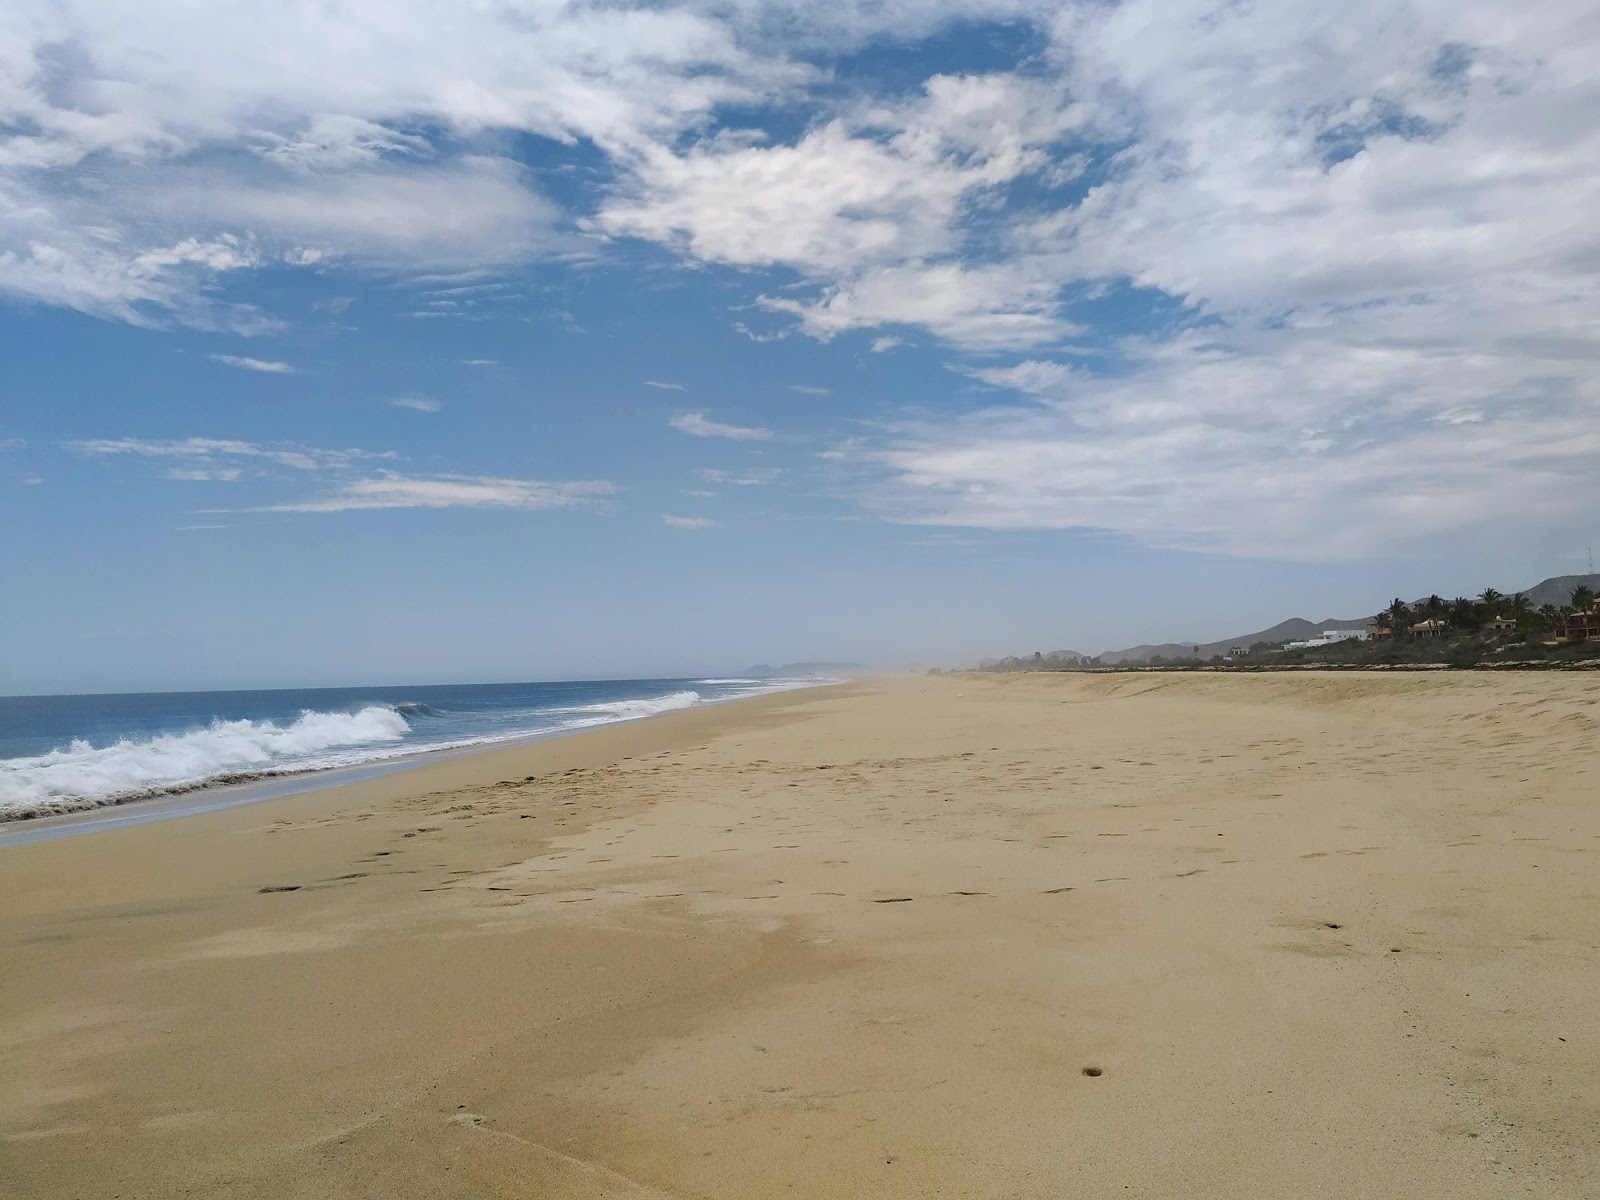 Fotografie cu Playa Coyoc cu o suprafață de nisip fin strălucitor